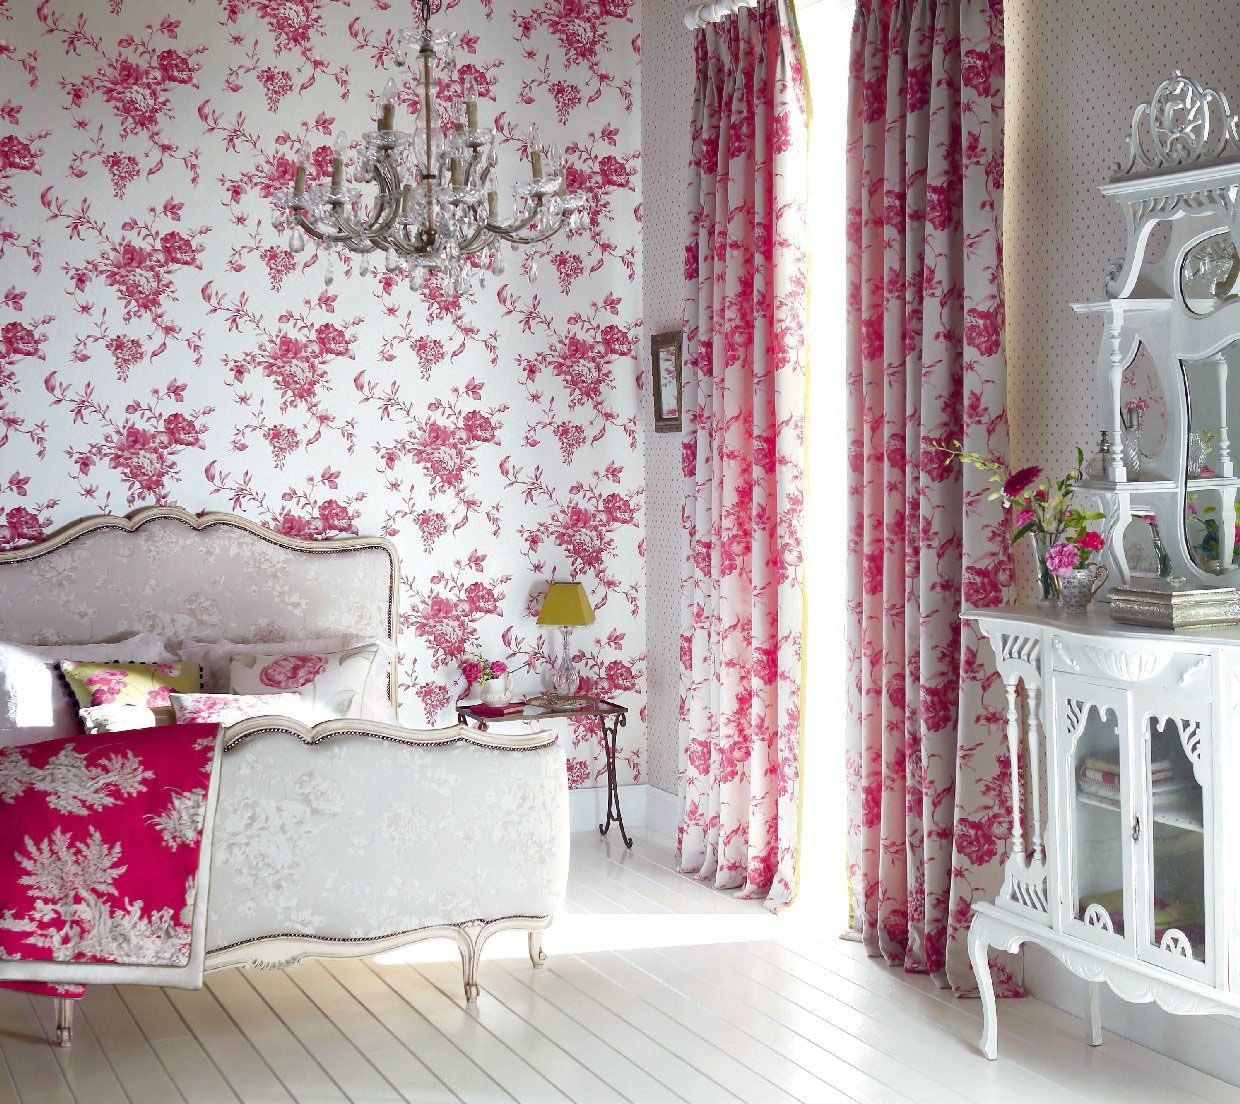 Дизайн комнаты с розовыми обоями